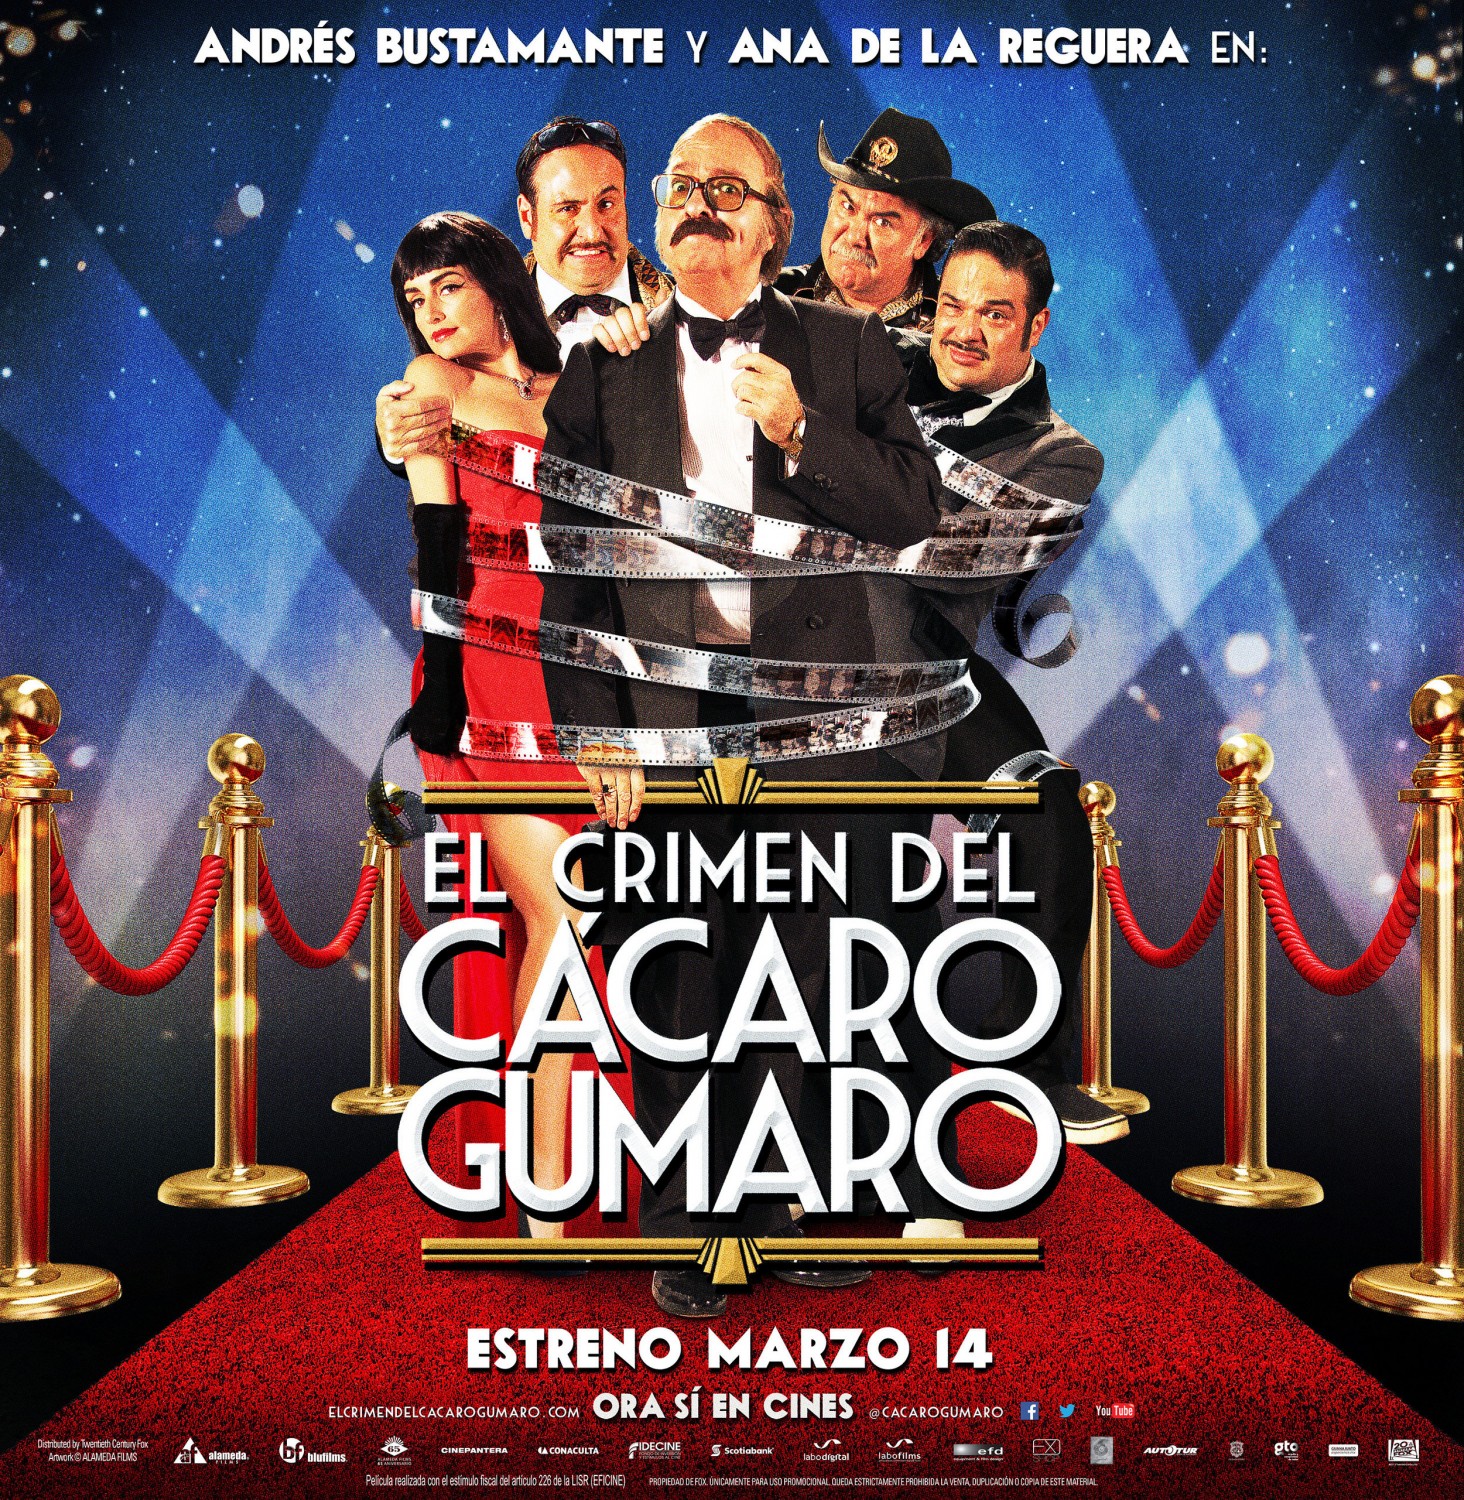 Extra Large Movie Poster Image for El Crimen del Cacaro Gumaro (#10 of 12)